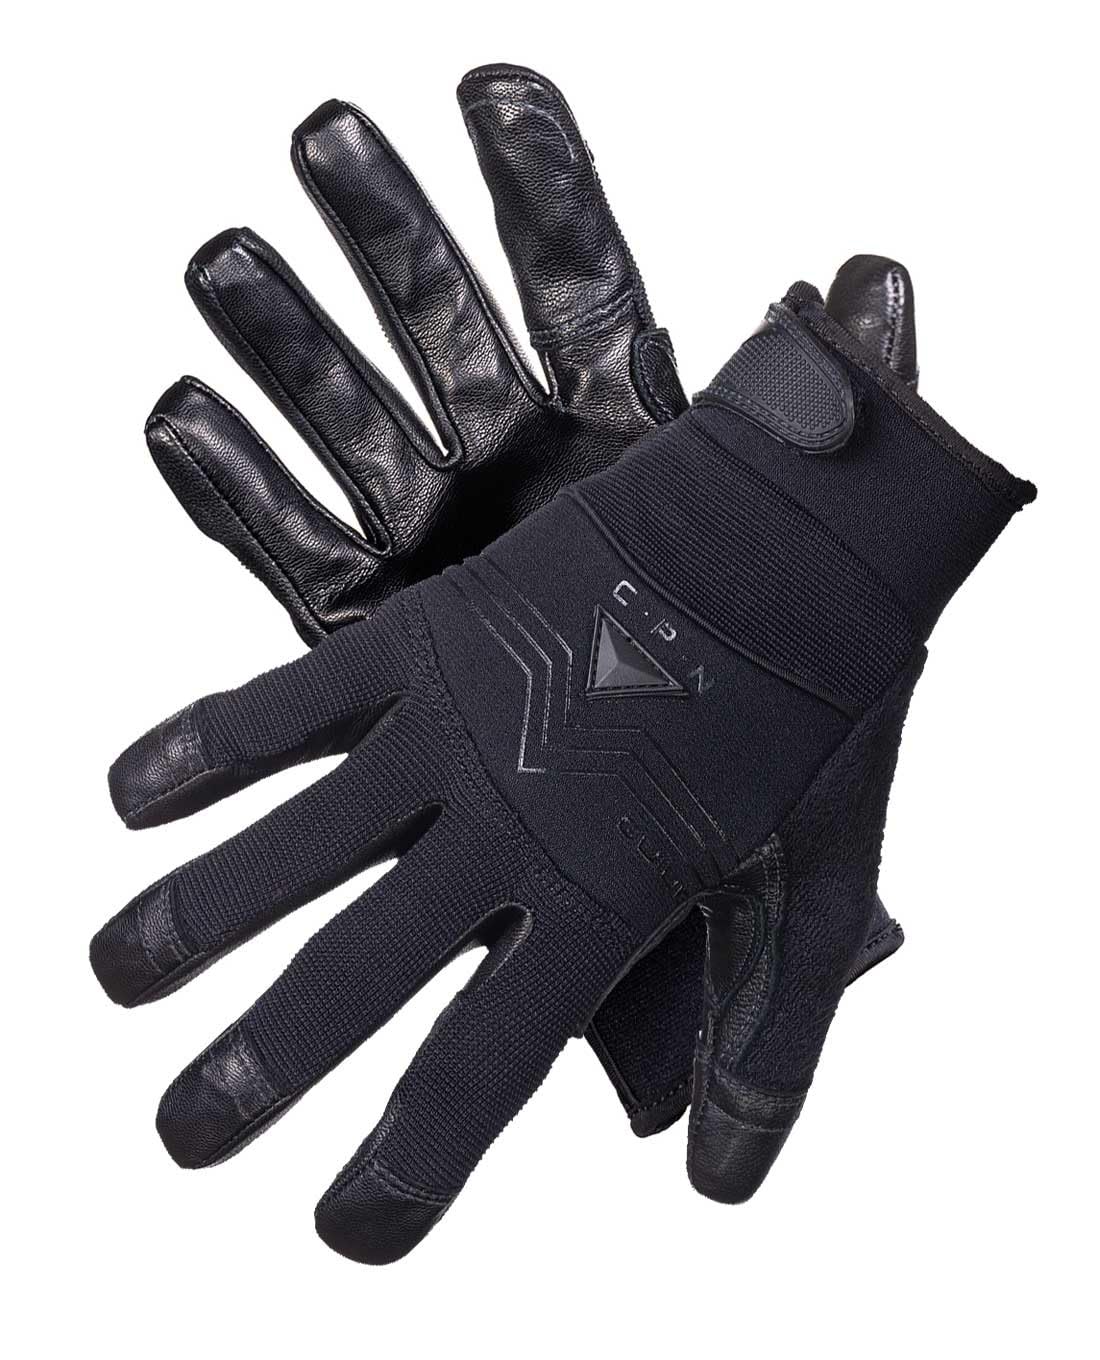 MOG Masters of Gloves Guide CPN 6203 extrem schnittfeste Stichschutz-Handschuhe Schnittschutz-Klasse F aus Metall-Mesh und Ziegennarben-Leder; für Gartenarbeit, Handwerk, Einsatzkräfte, Sicherheit